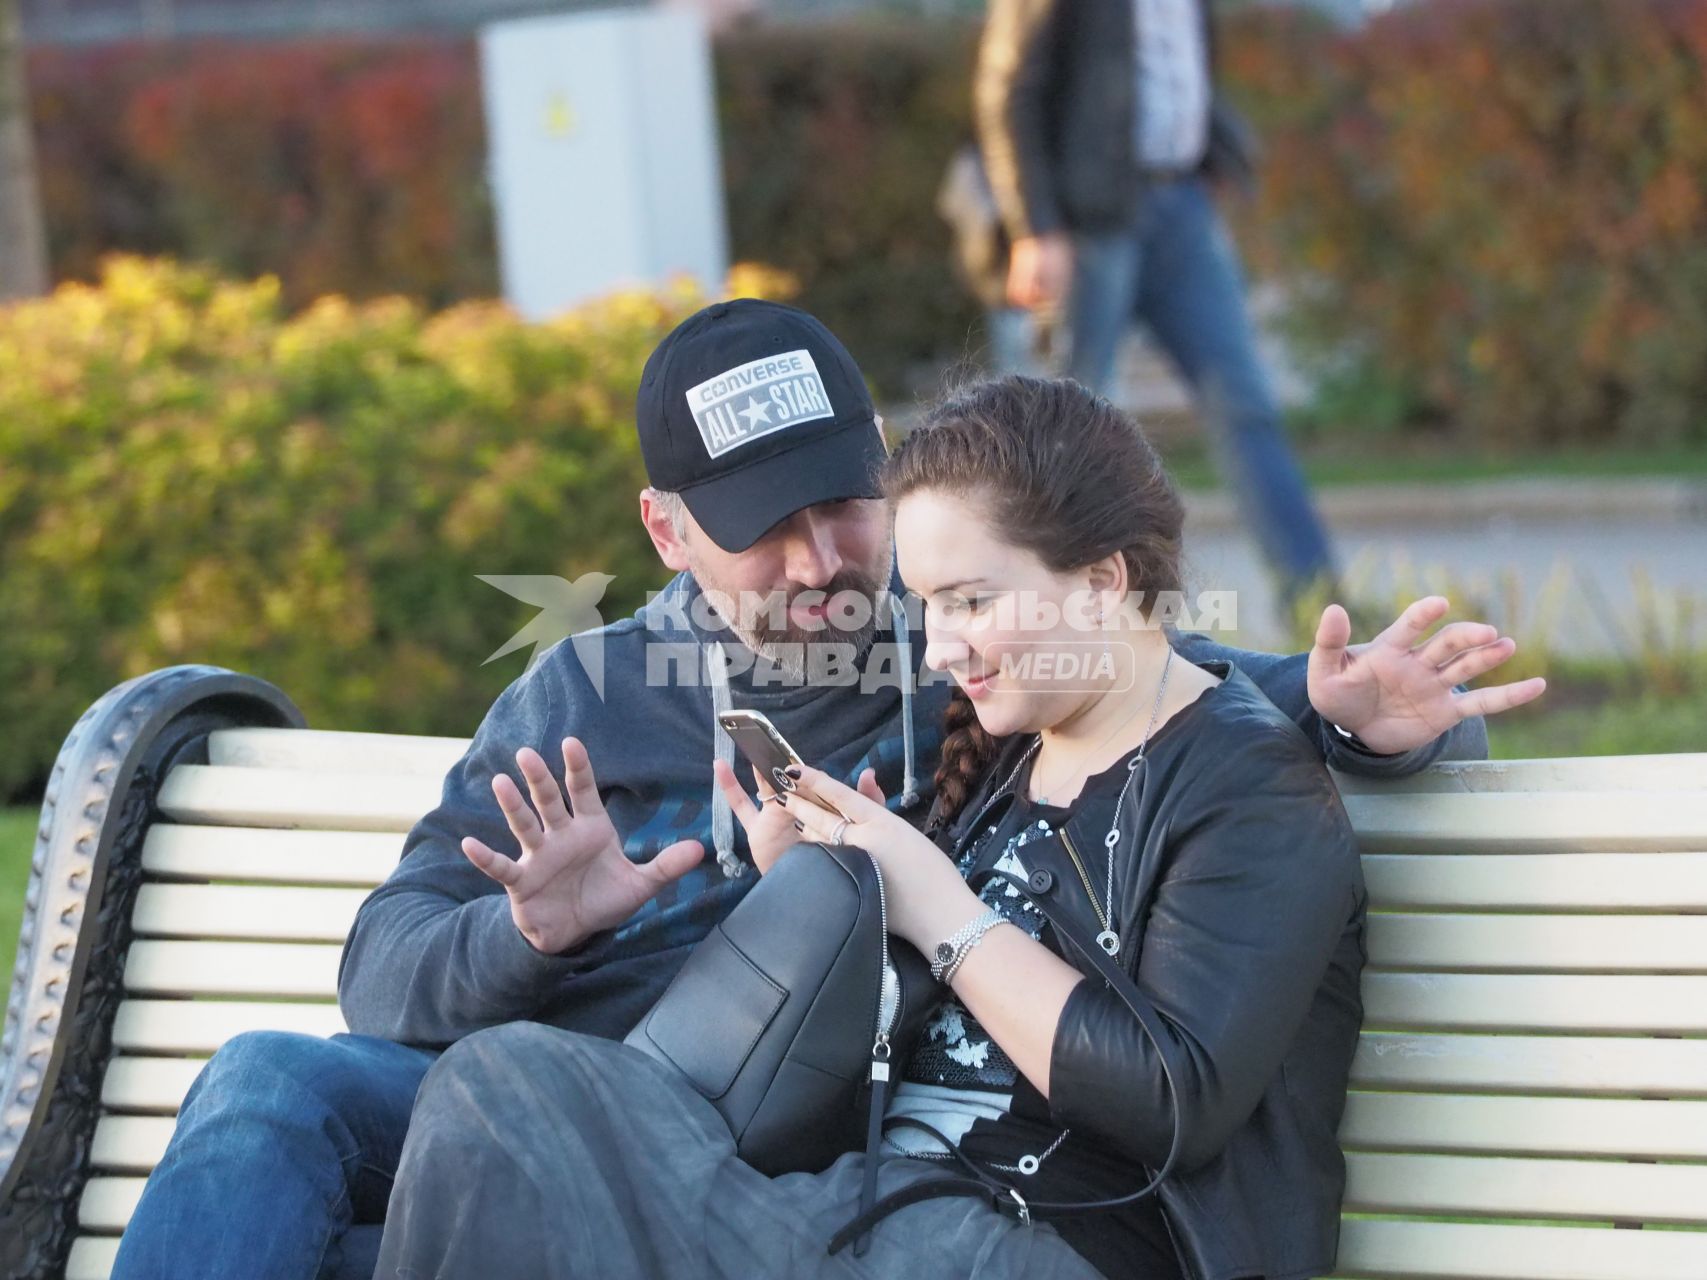 Москва. Молодой человек и девушка сидят на скамейке.